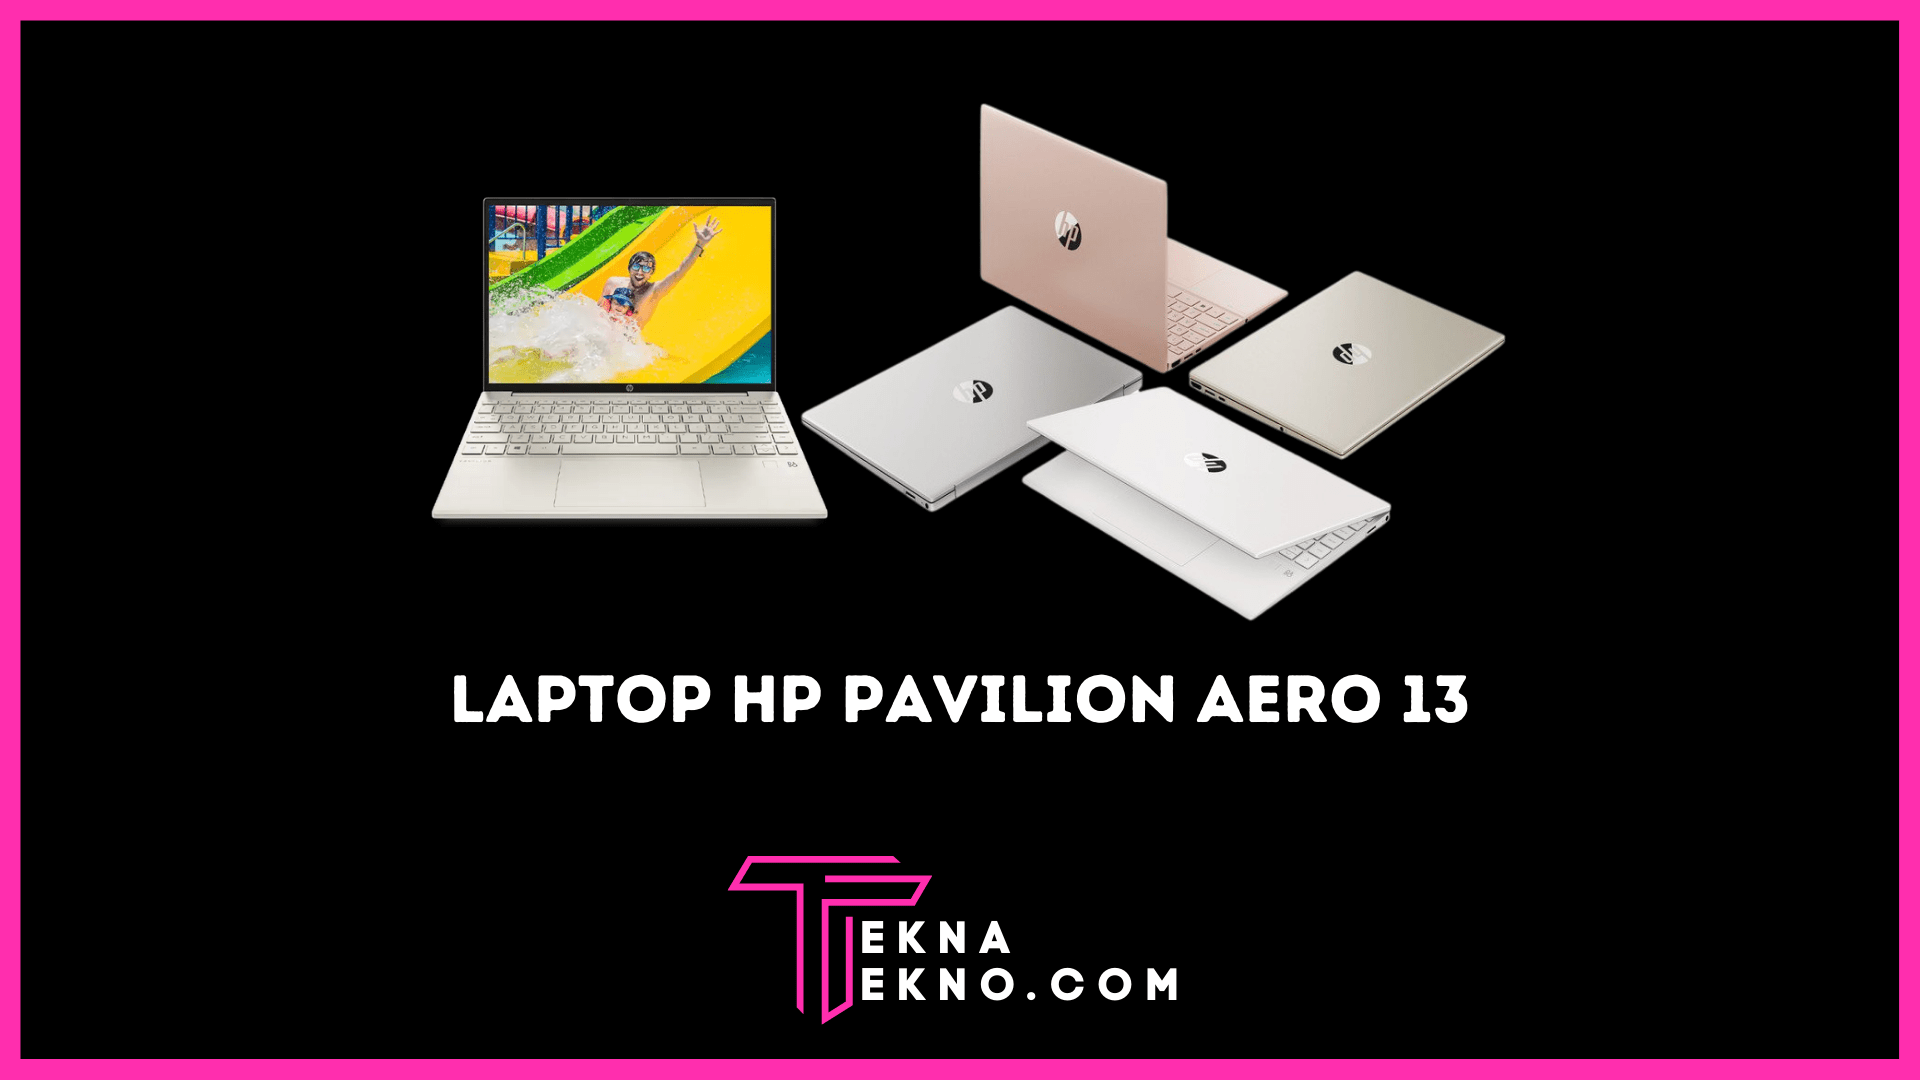 Harga Laptop HP Pavilion Aero 13 Terbaru di Indonesia